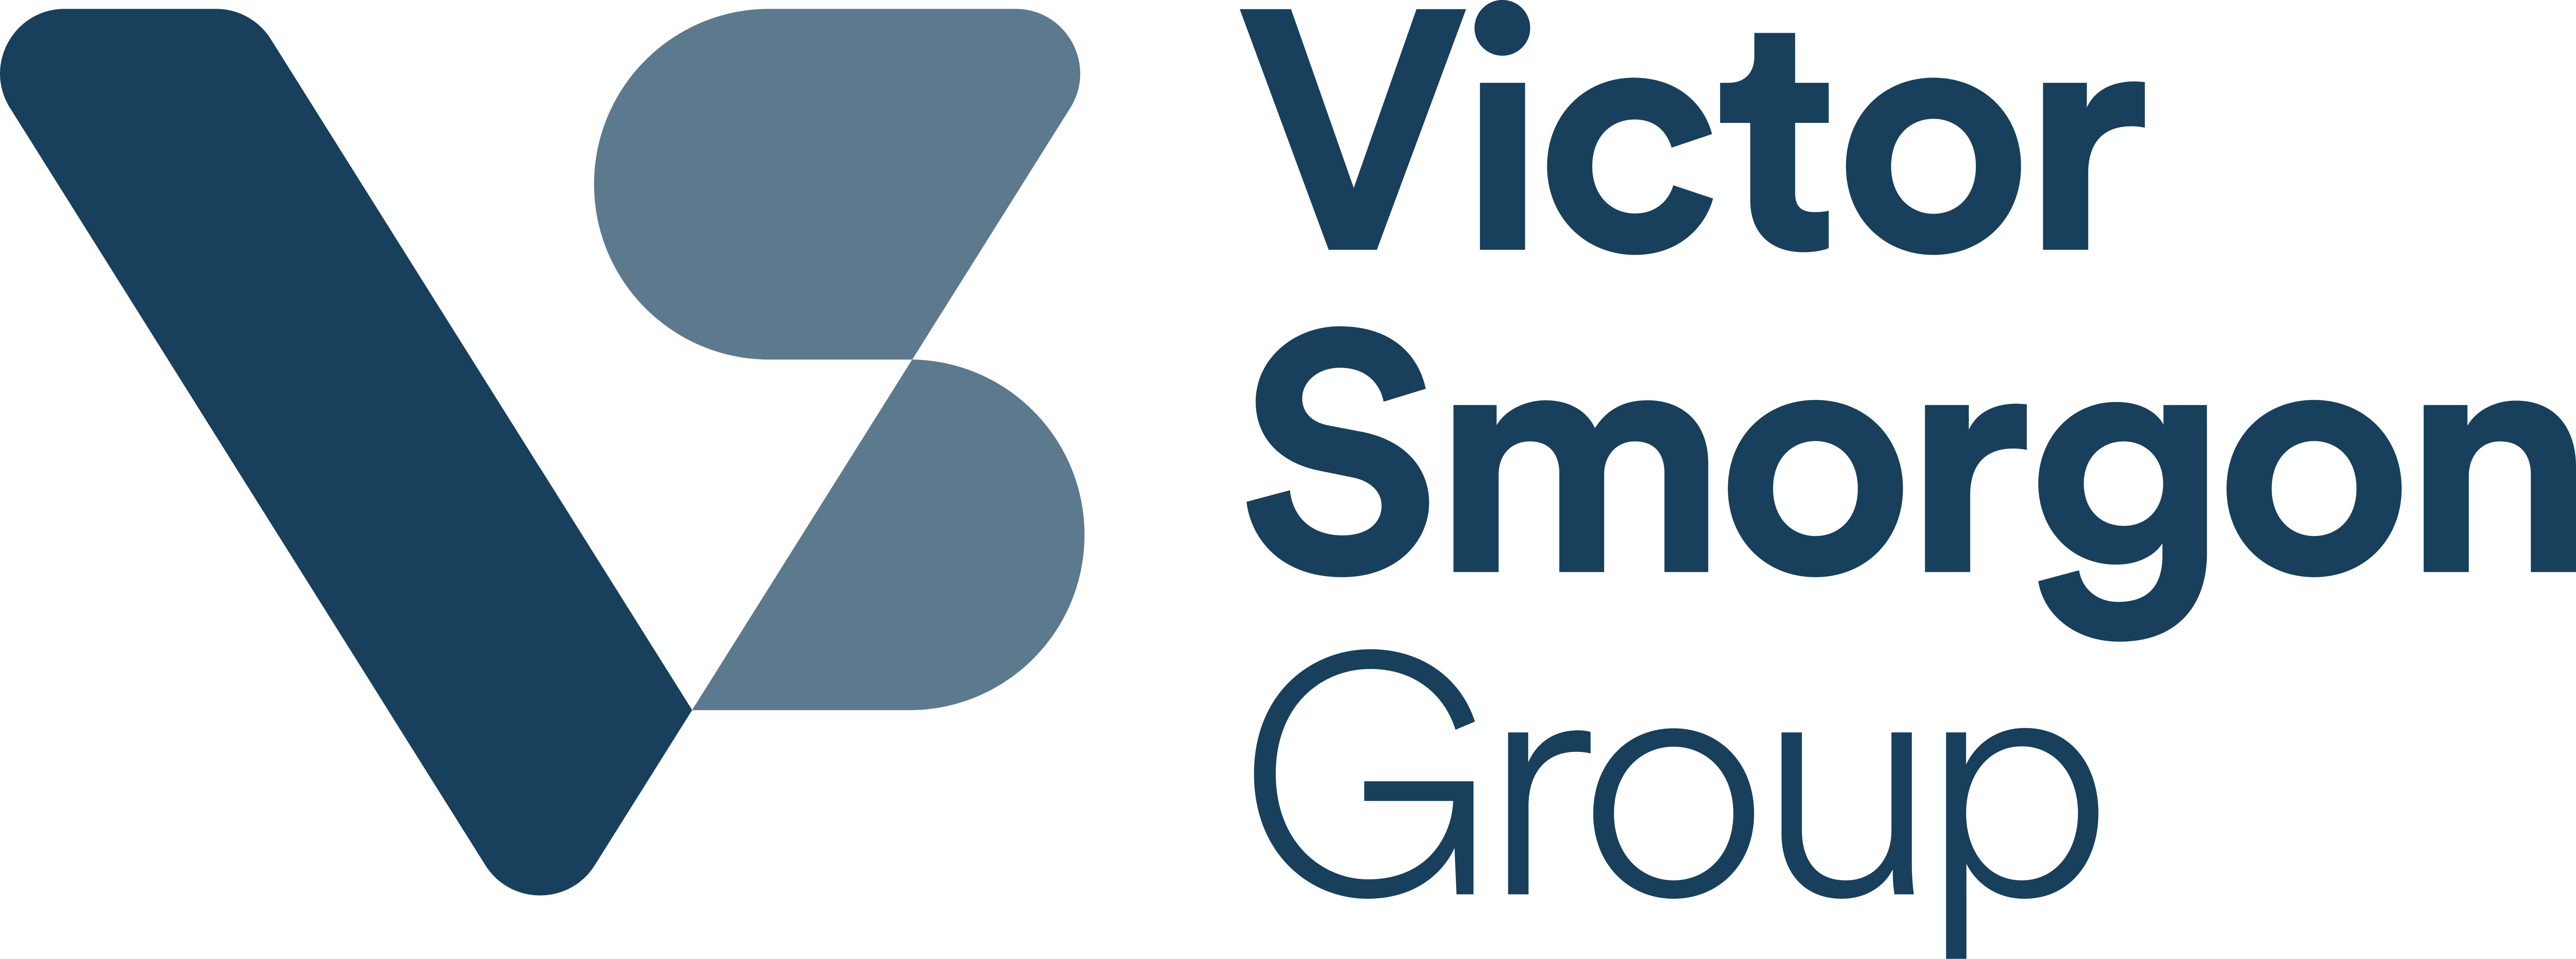 Victor Smorgon Group: Vicfam Plastics Division